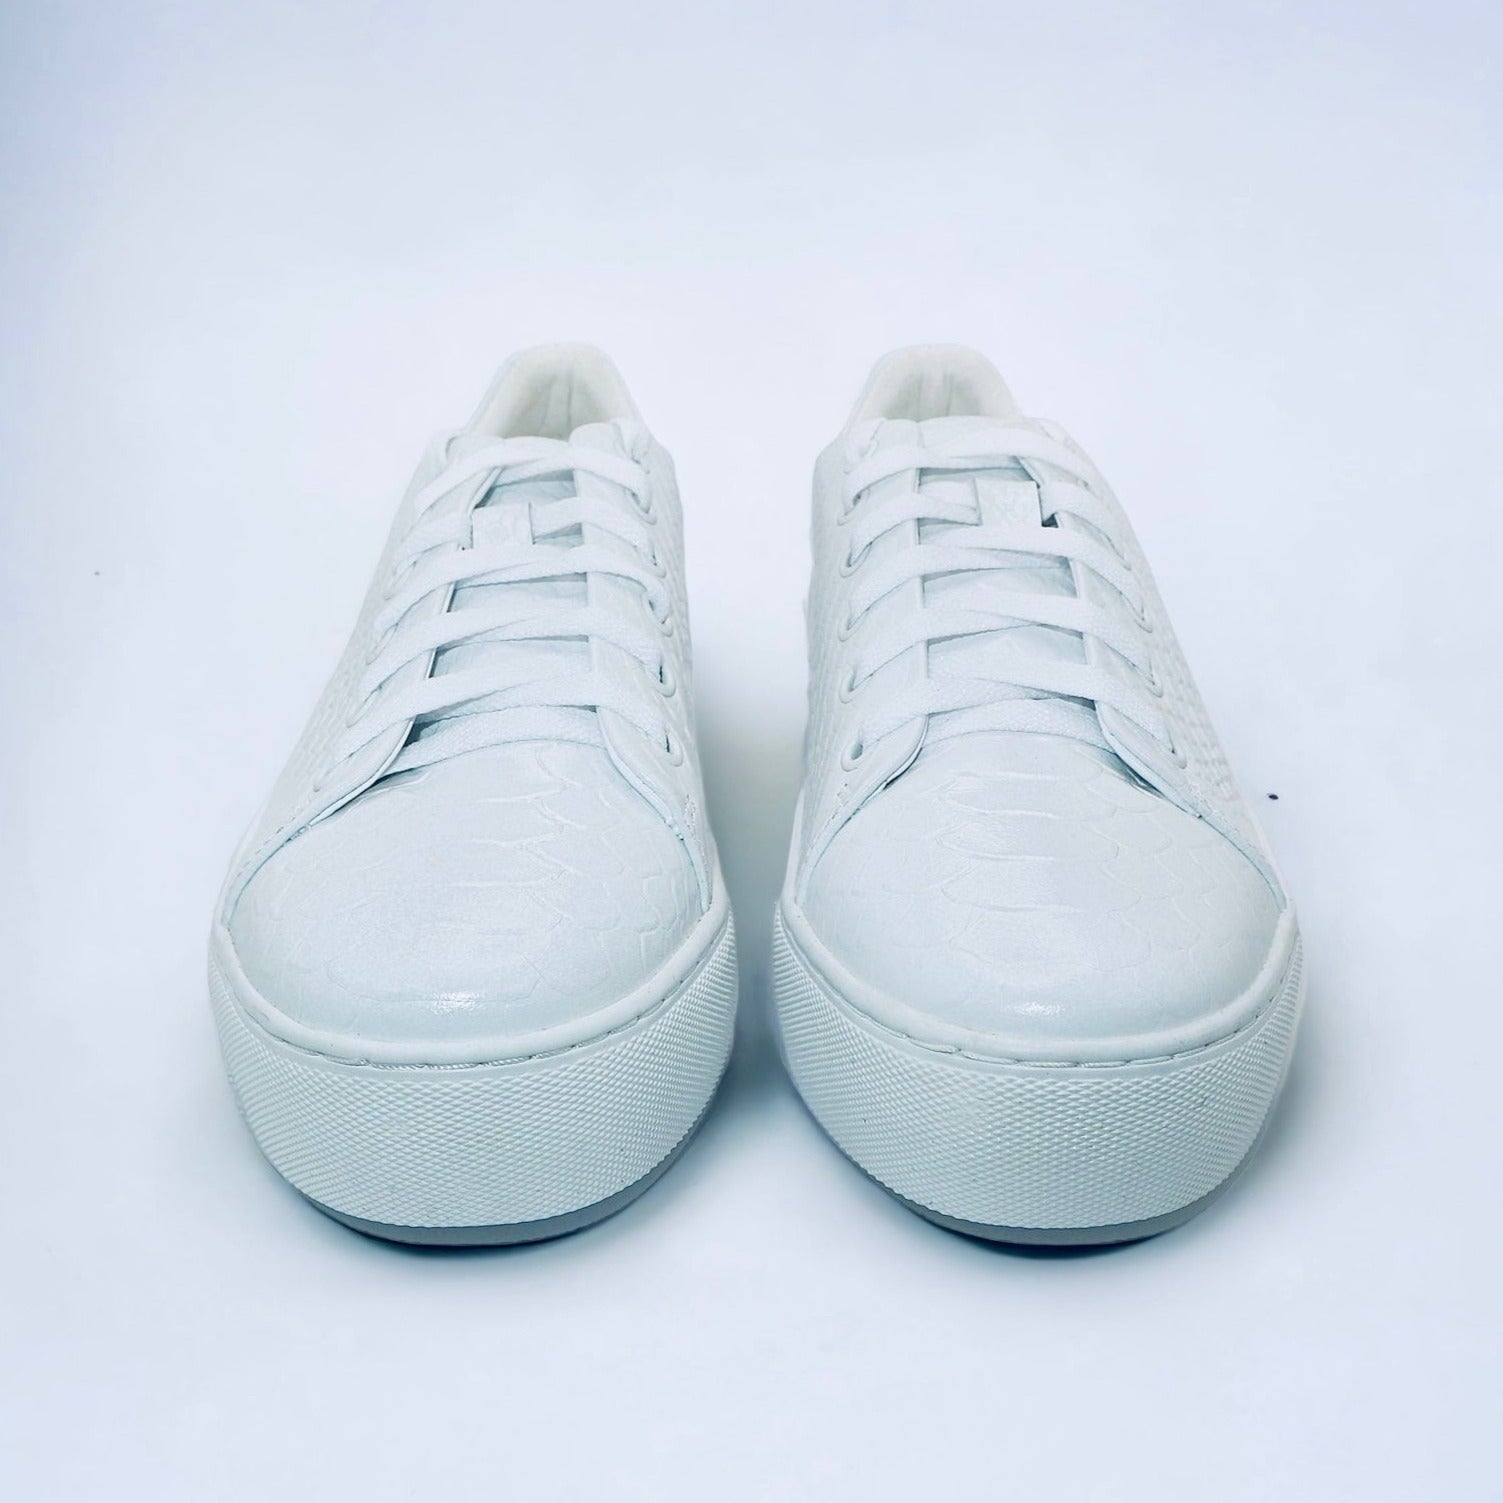 Amare the Best white sneakers for Girls | Michaela V